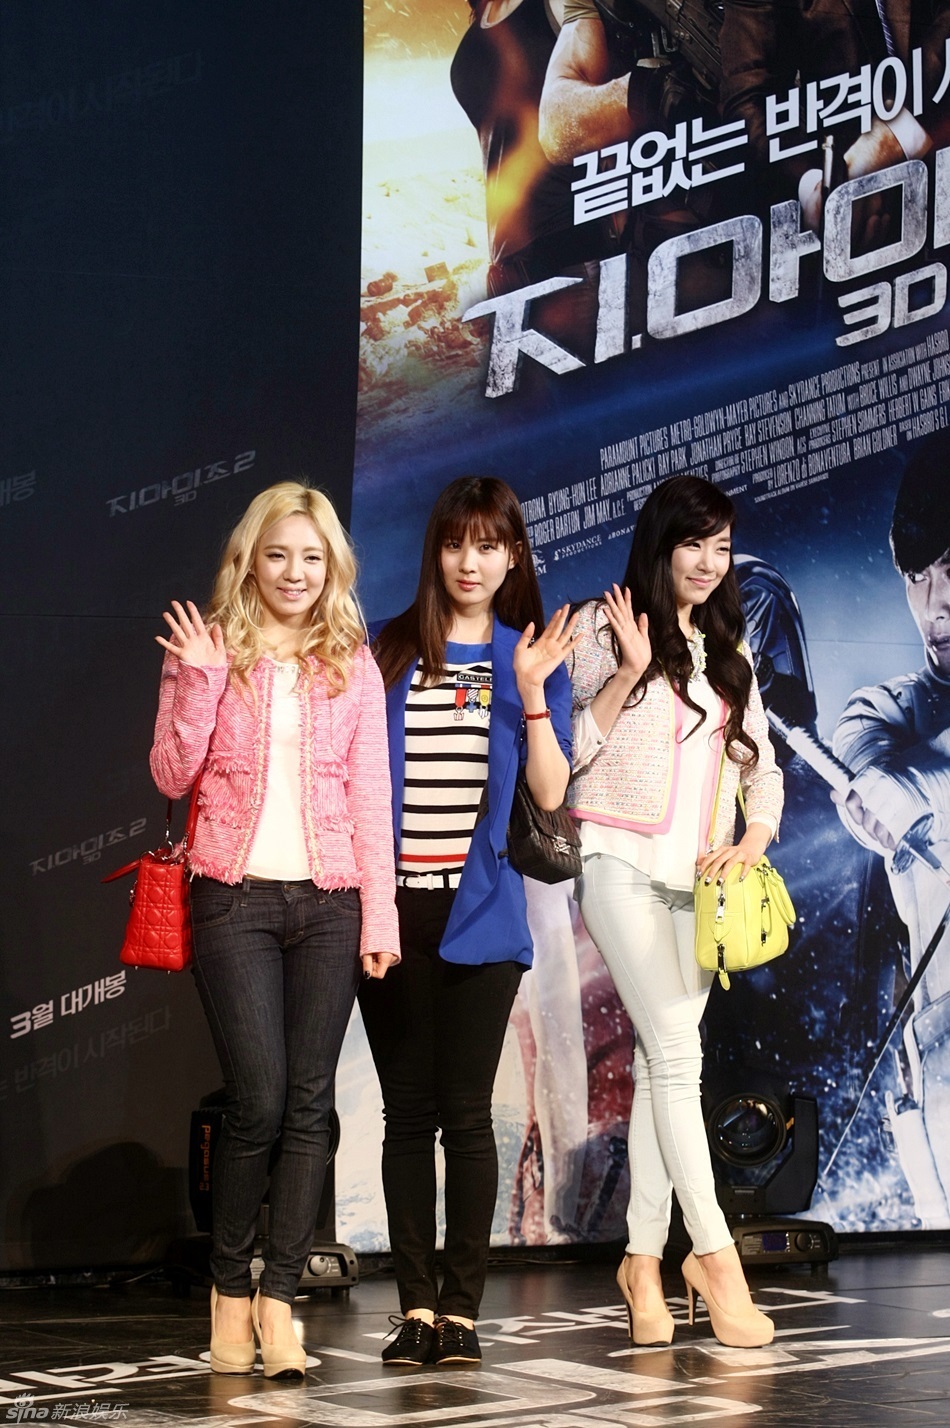 [PIC][11-03-2013]HyoYeon - SeoHyun và Tiffany xuất hiện tại buổi công chiếu bộ phim "G.I.Joe 2" vào tối nay 704_908977_537486